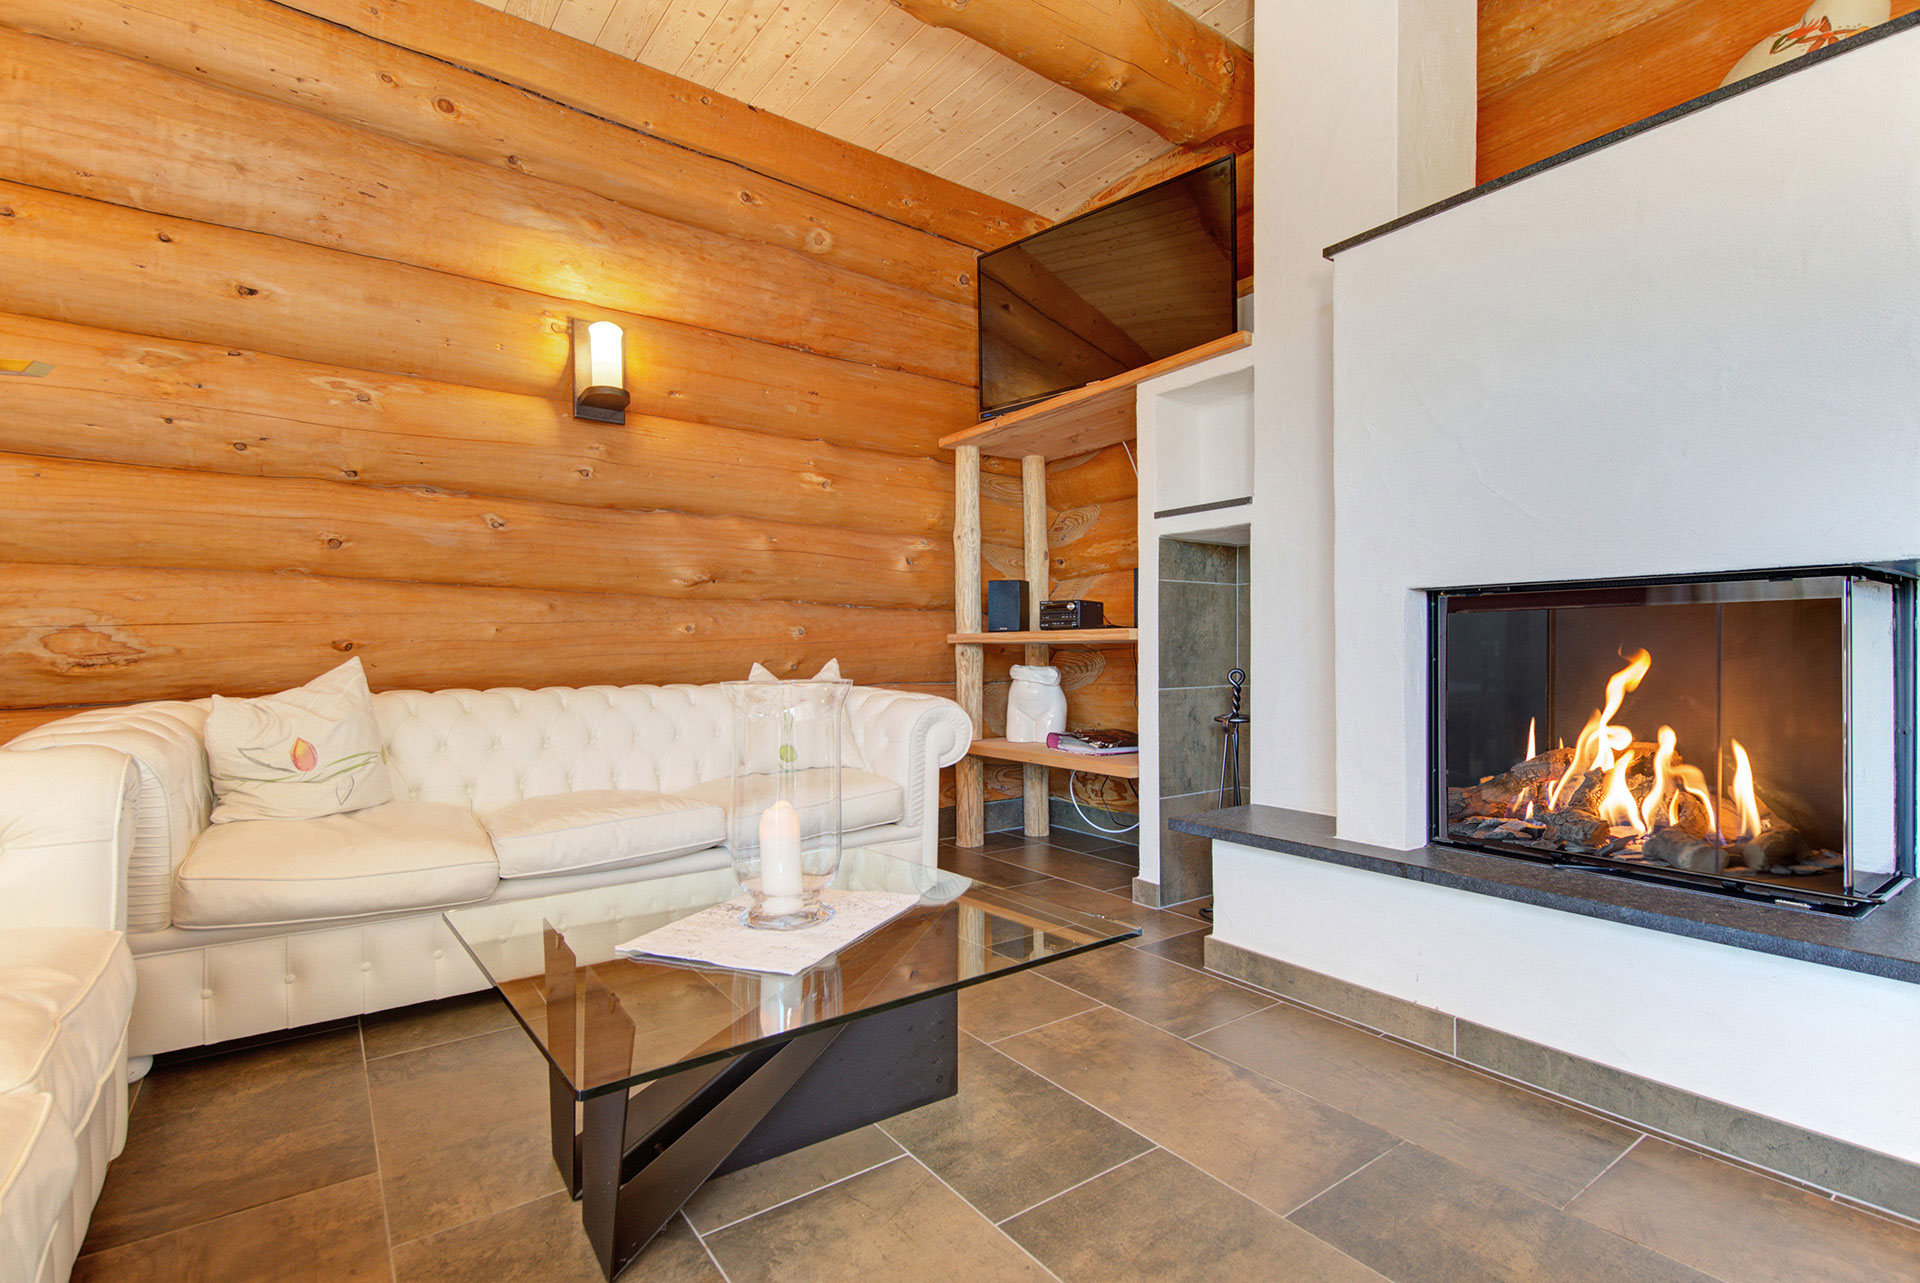 foto verbessern wohnraum mit brennendem kamin nachher